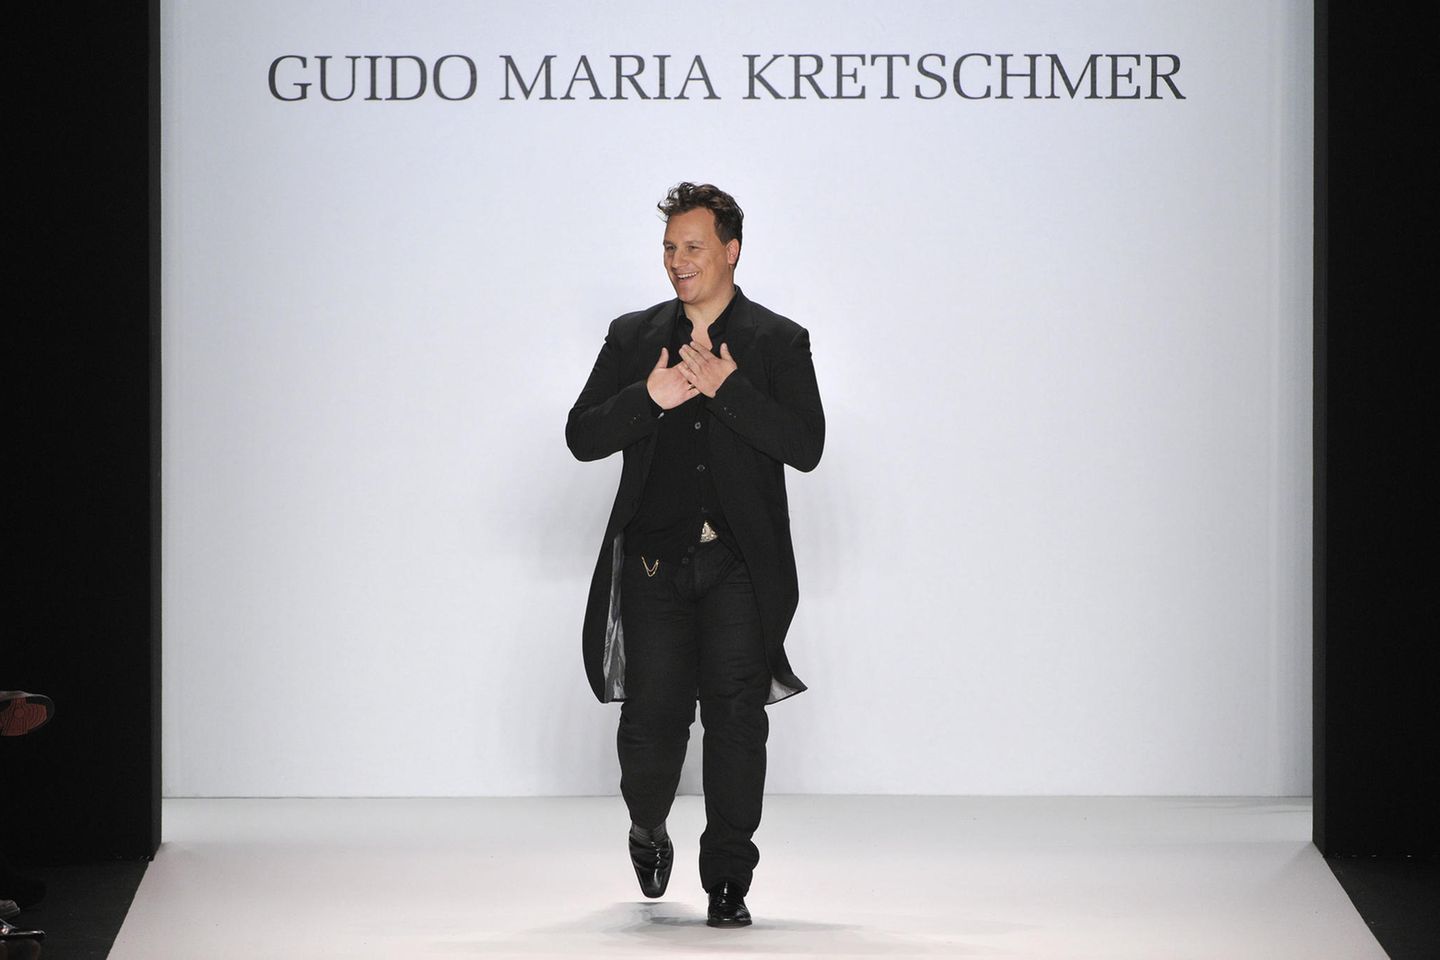 Guido Maria Kretschmer: 2014 war mein Jahr!